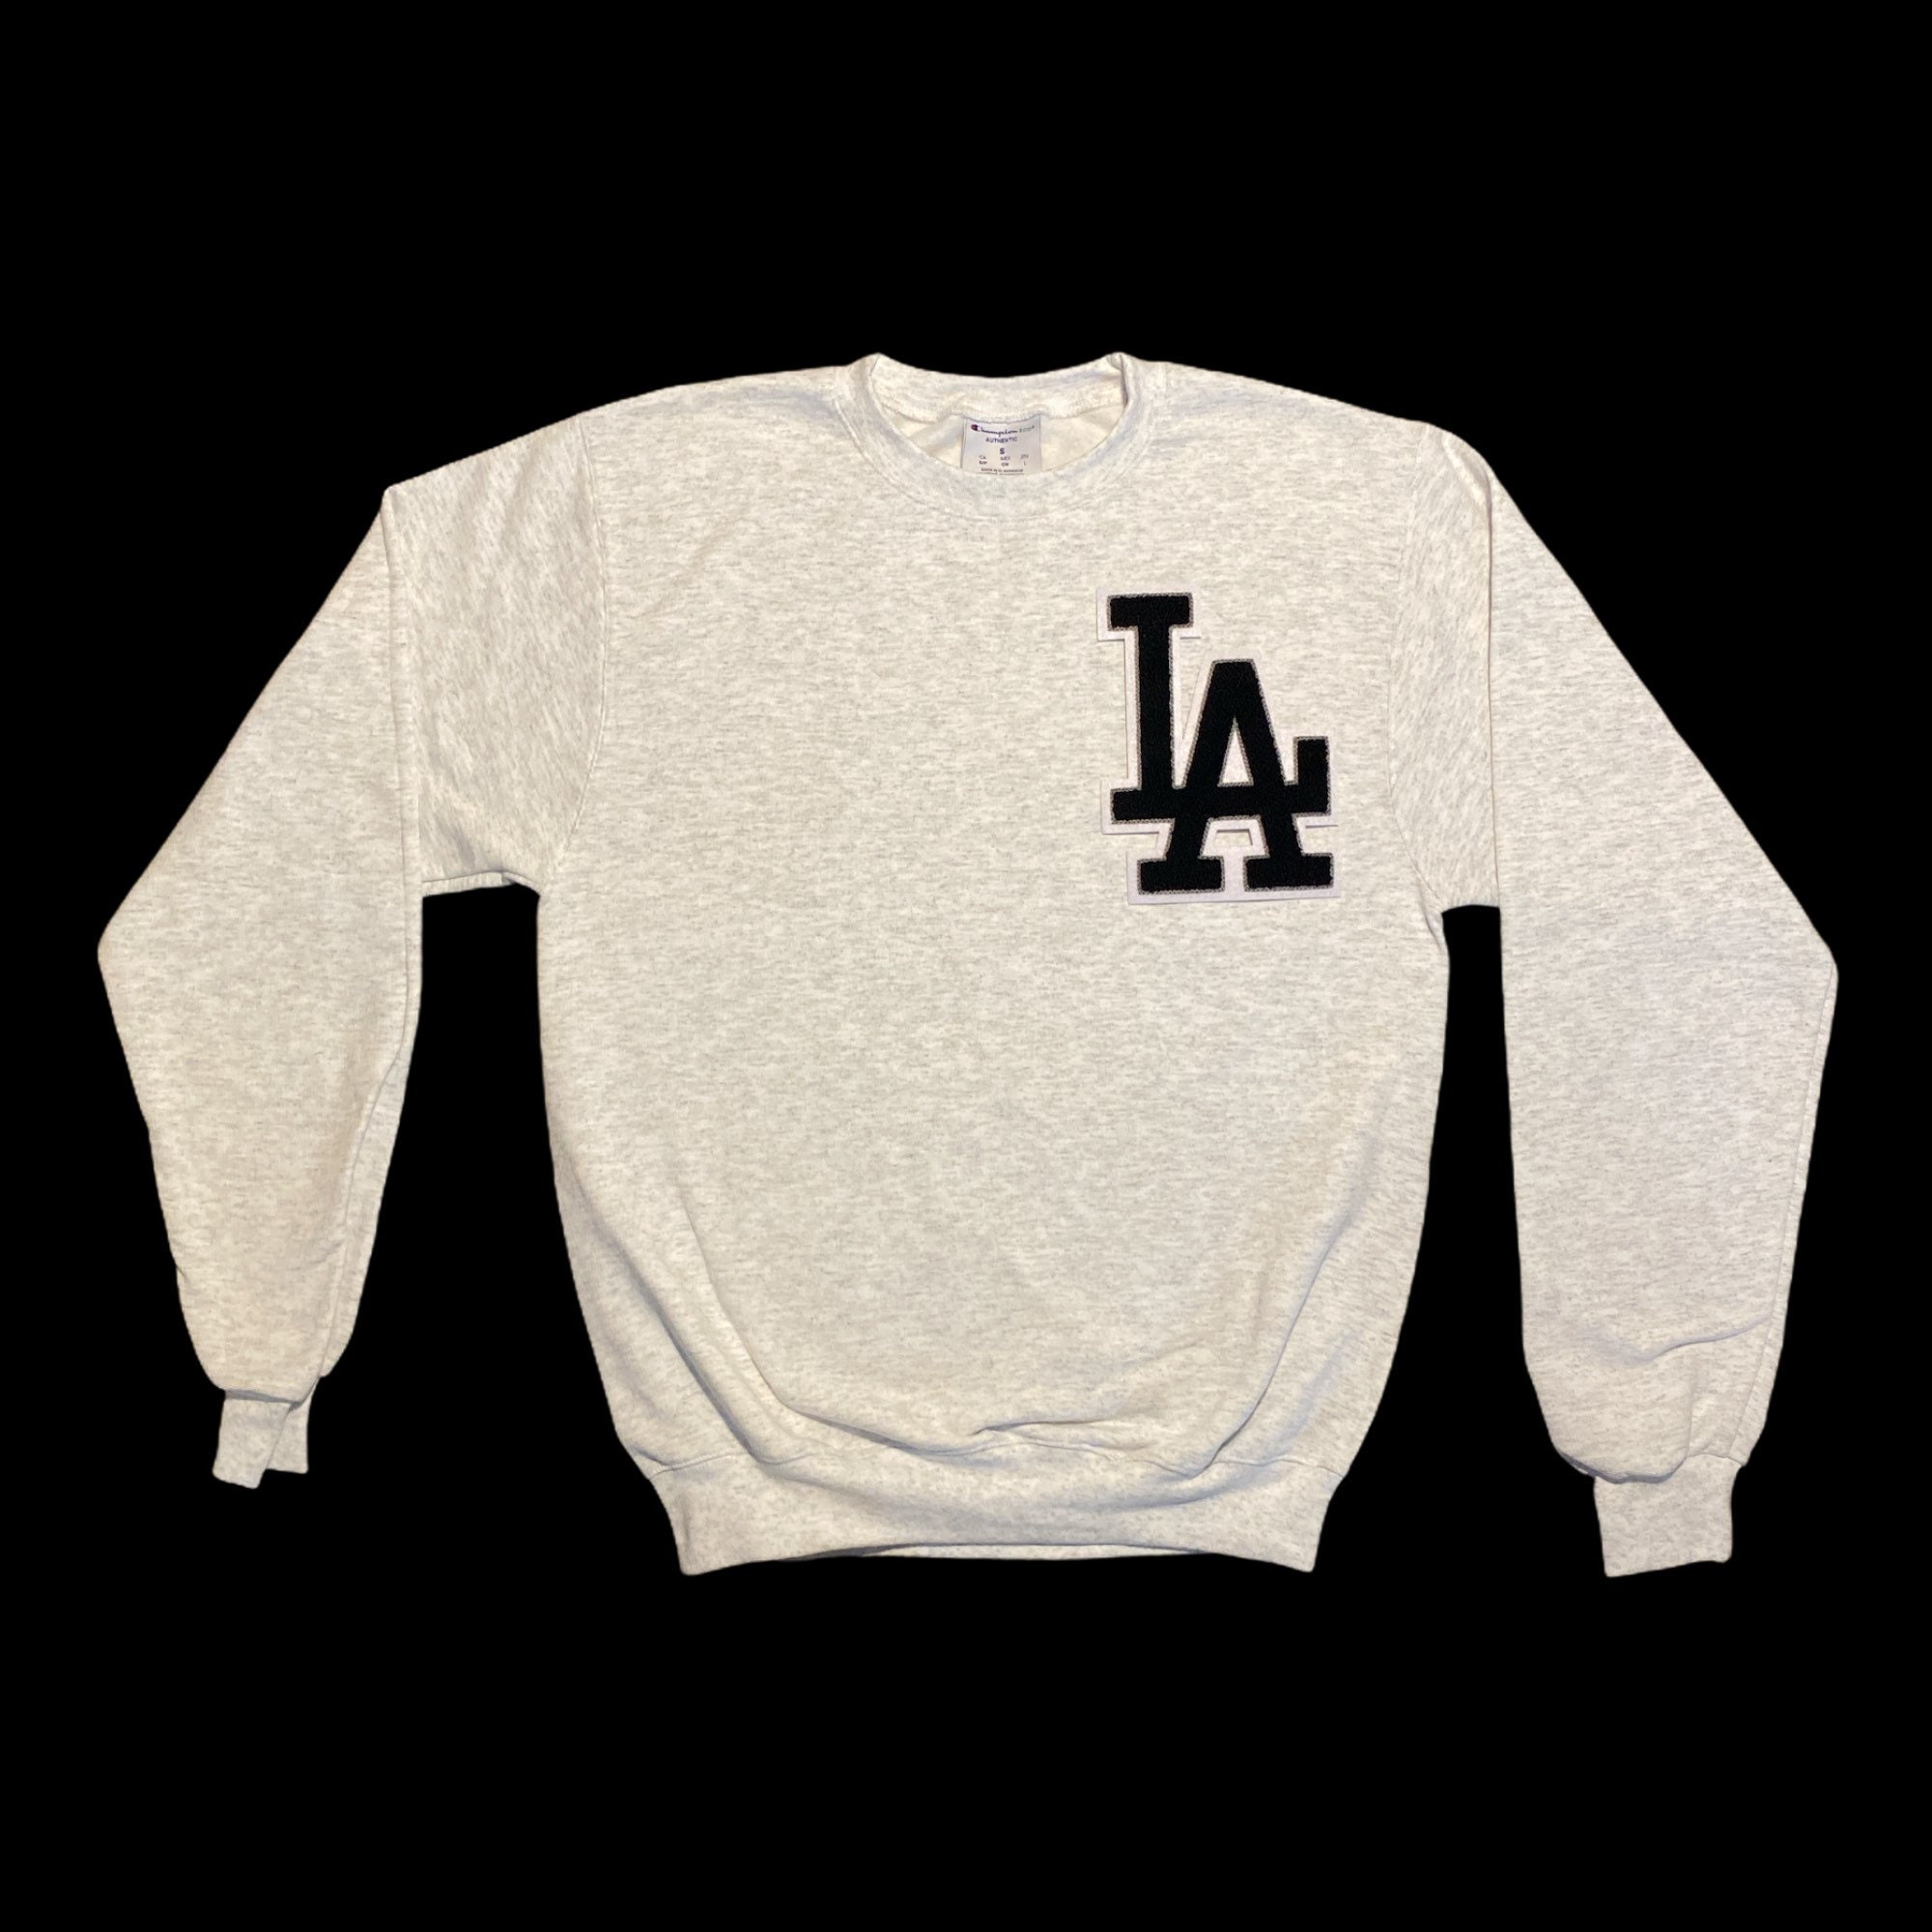 Los Angeles Crewneck Baseball Sweater - Etsy UK